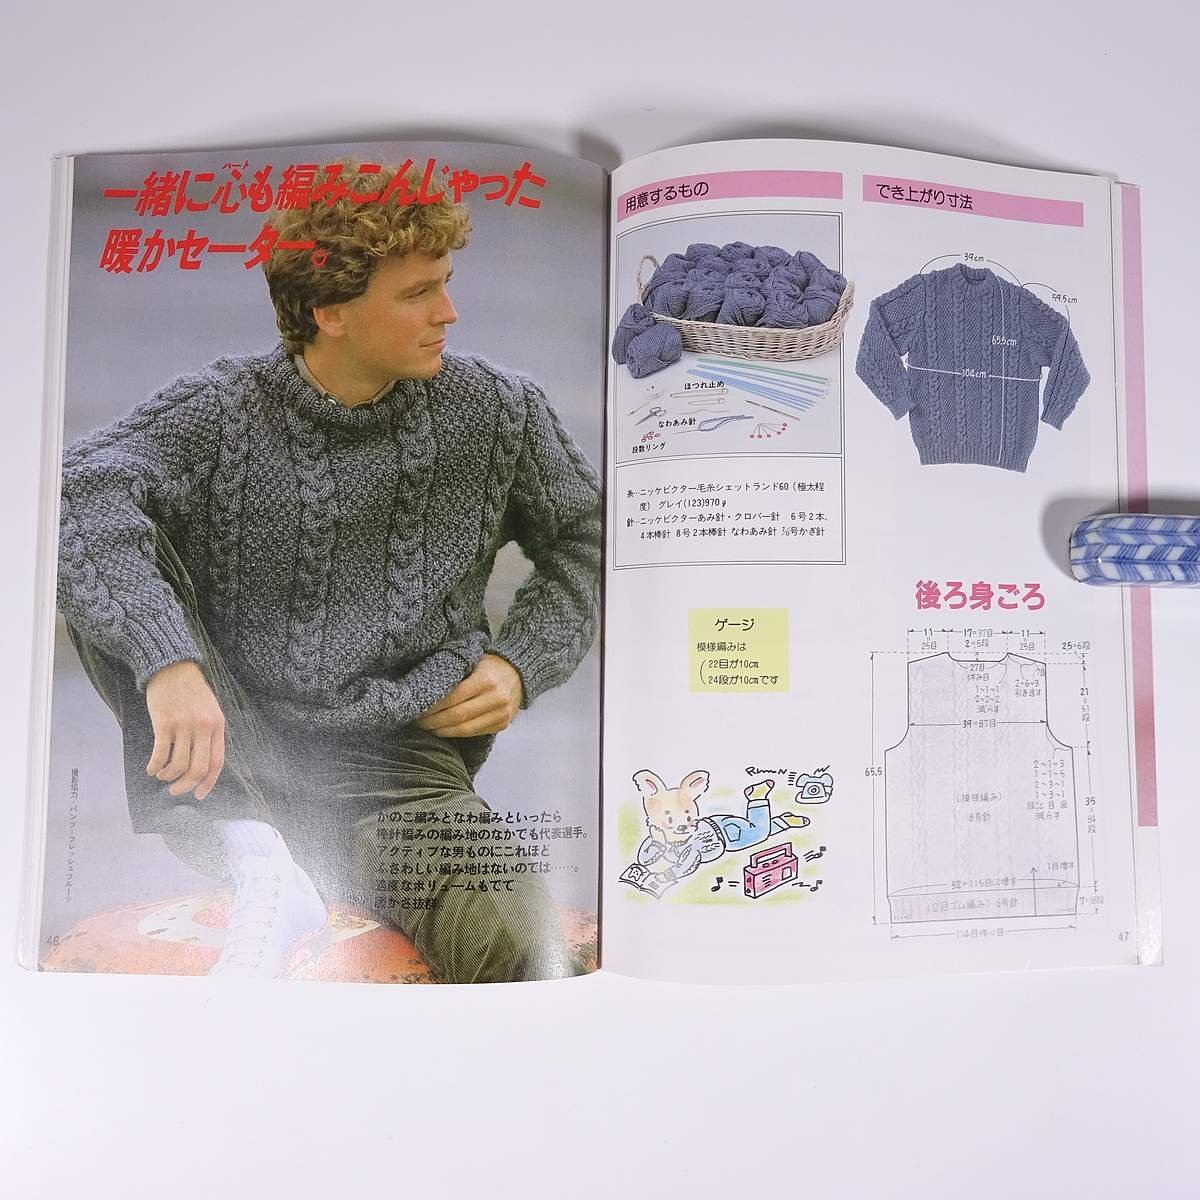 編みながら覚える メンズ・セーター ONDORI 雄鶏社 1983 大型本 手芸 編物 あみもの_画像9